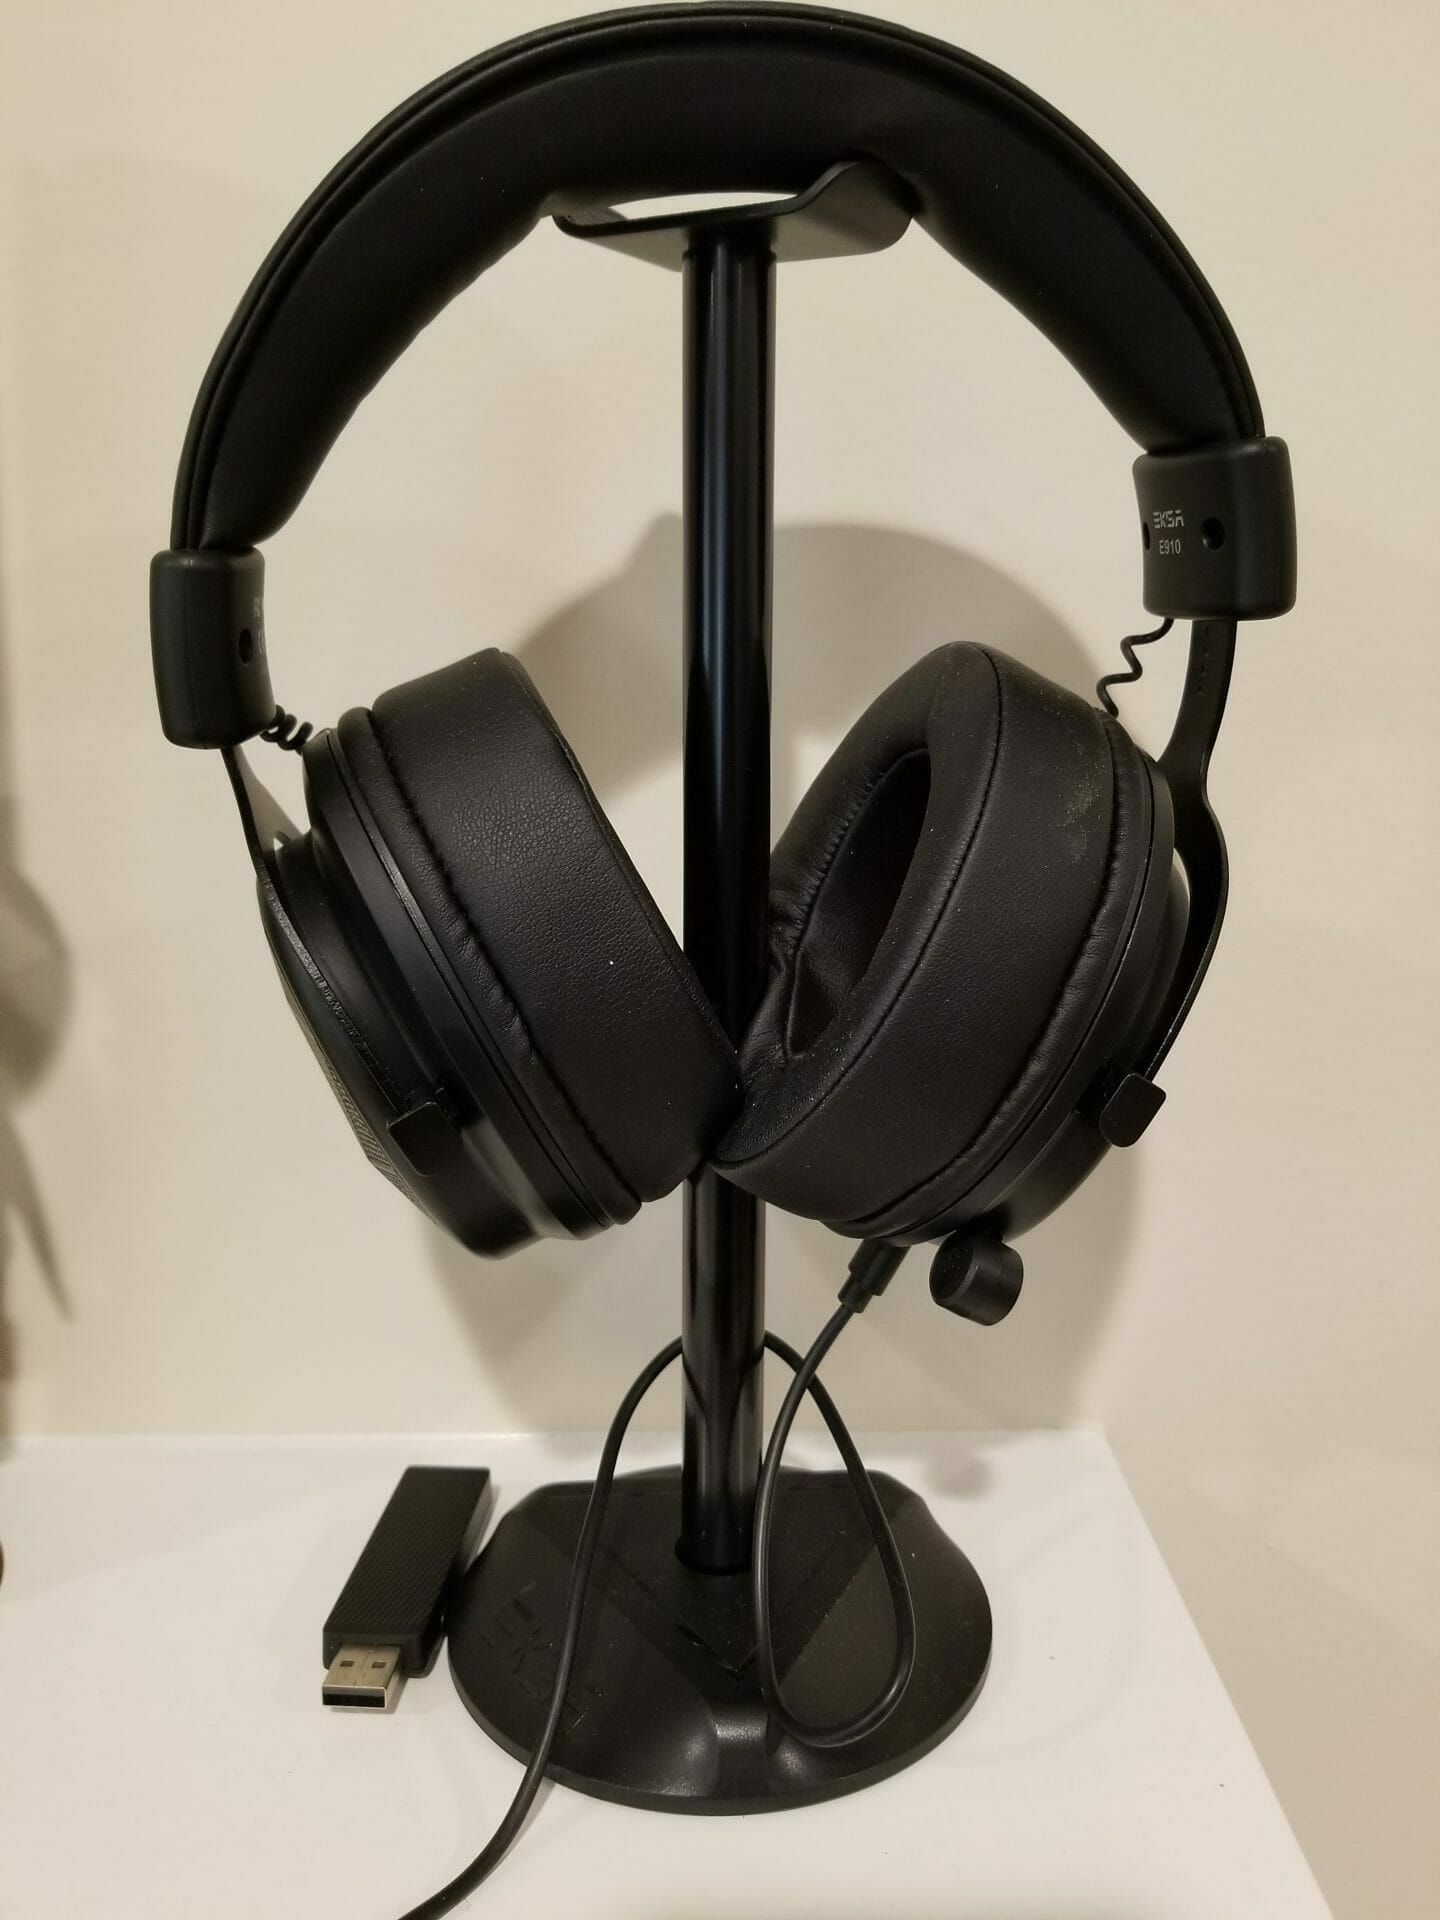 Eksa headphones on a stand